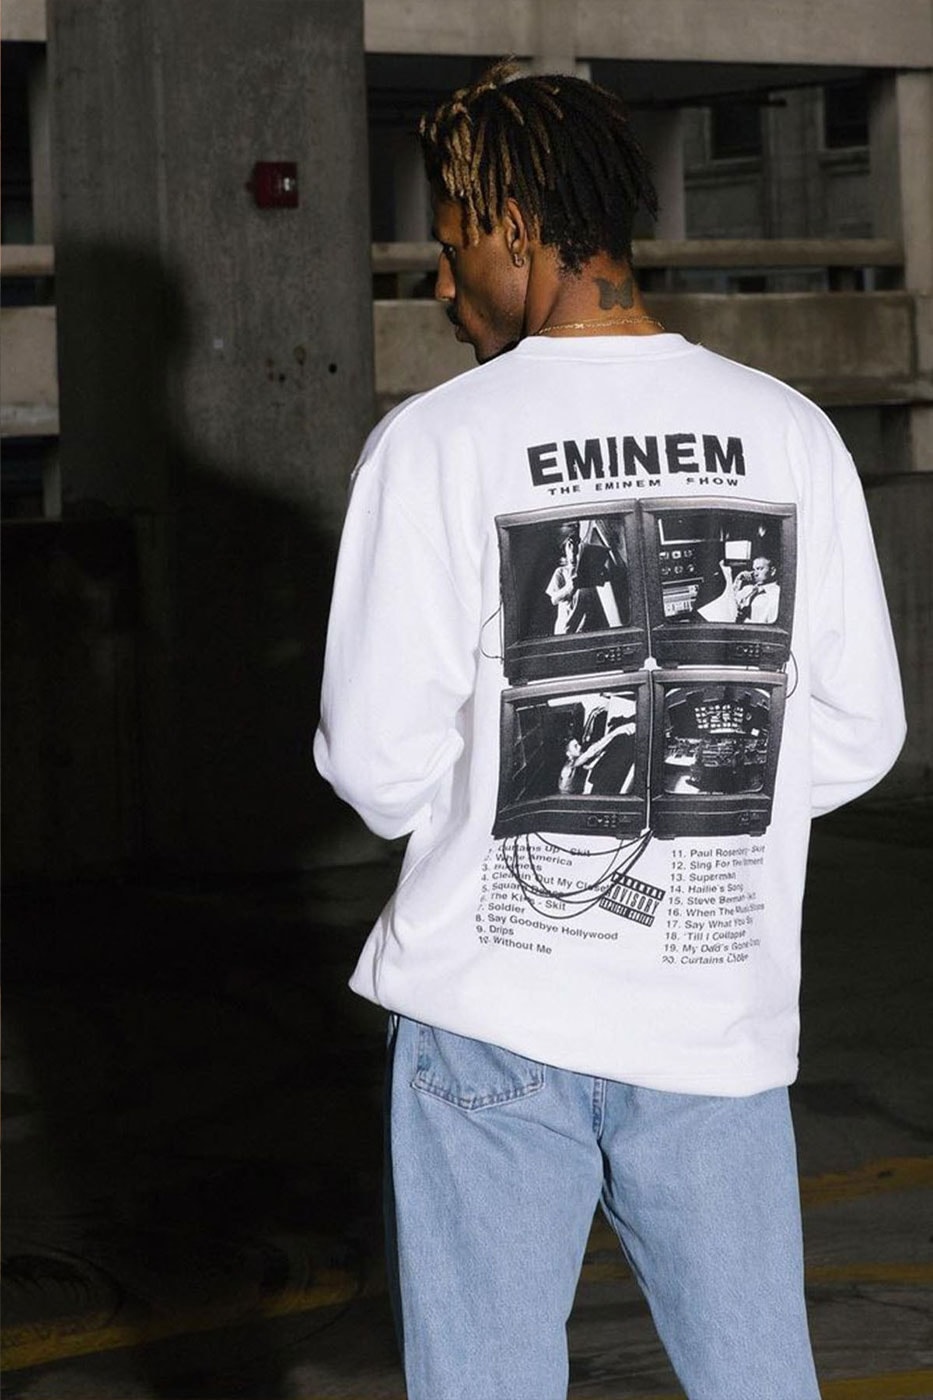 Eminem The Eminem Show: коллекция мерча, посвященная 20-летию Эминема, информация о двух релизах